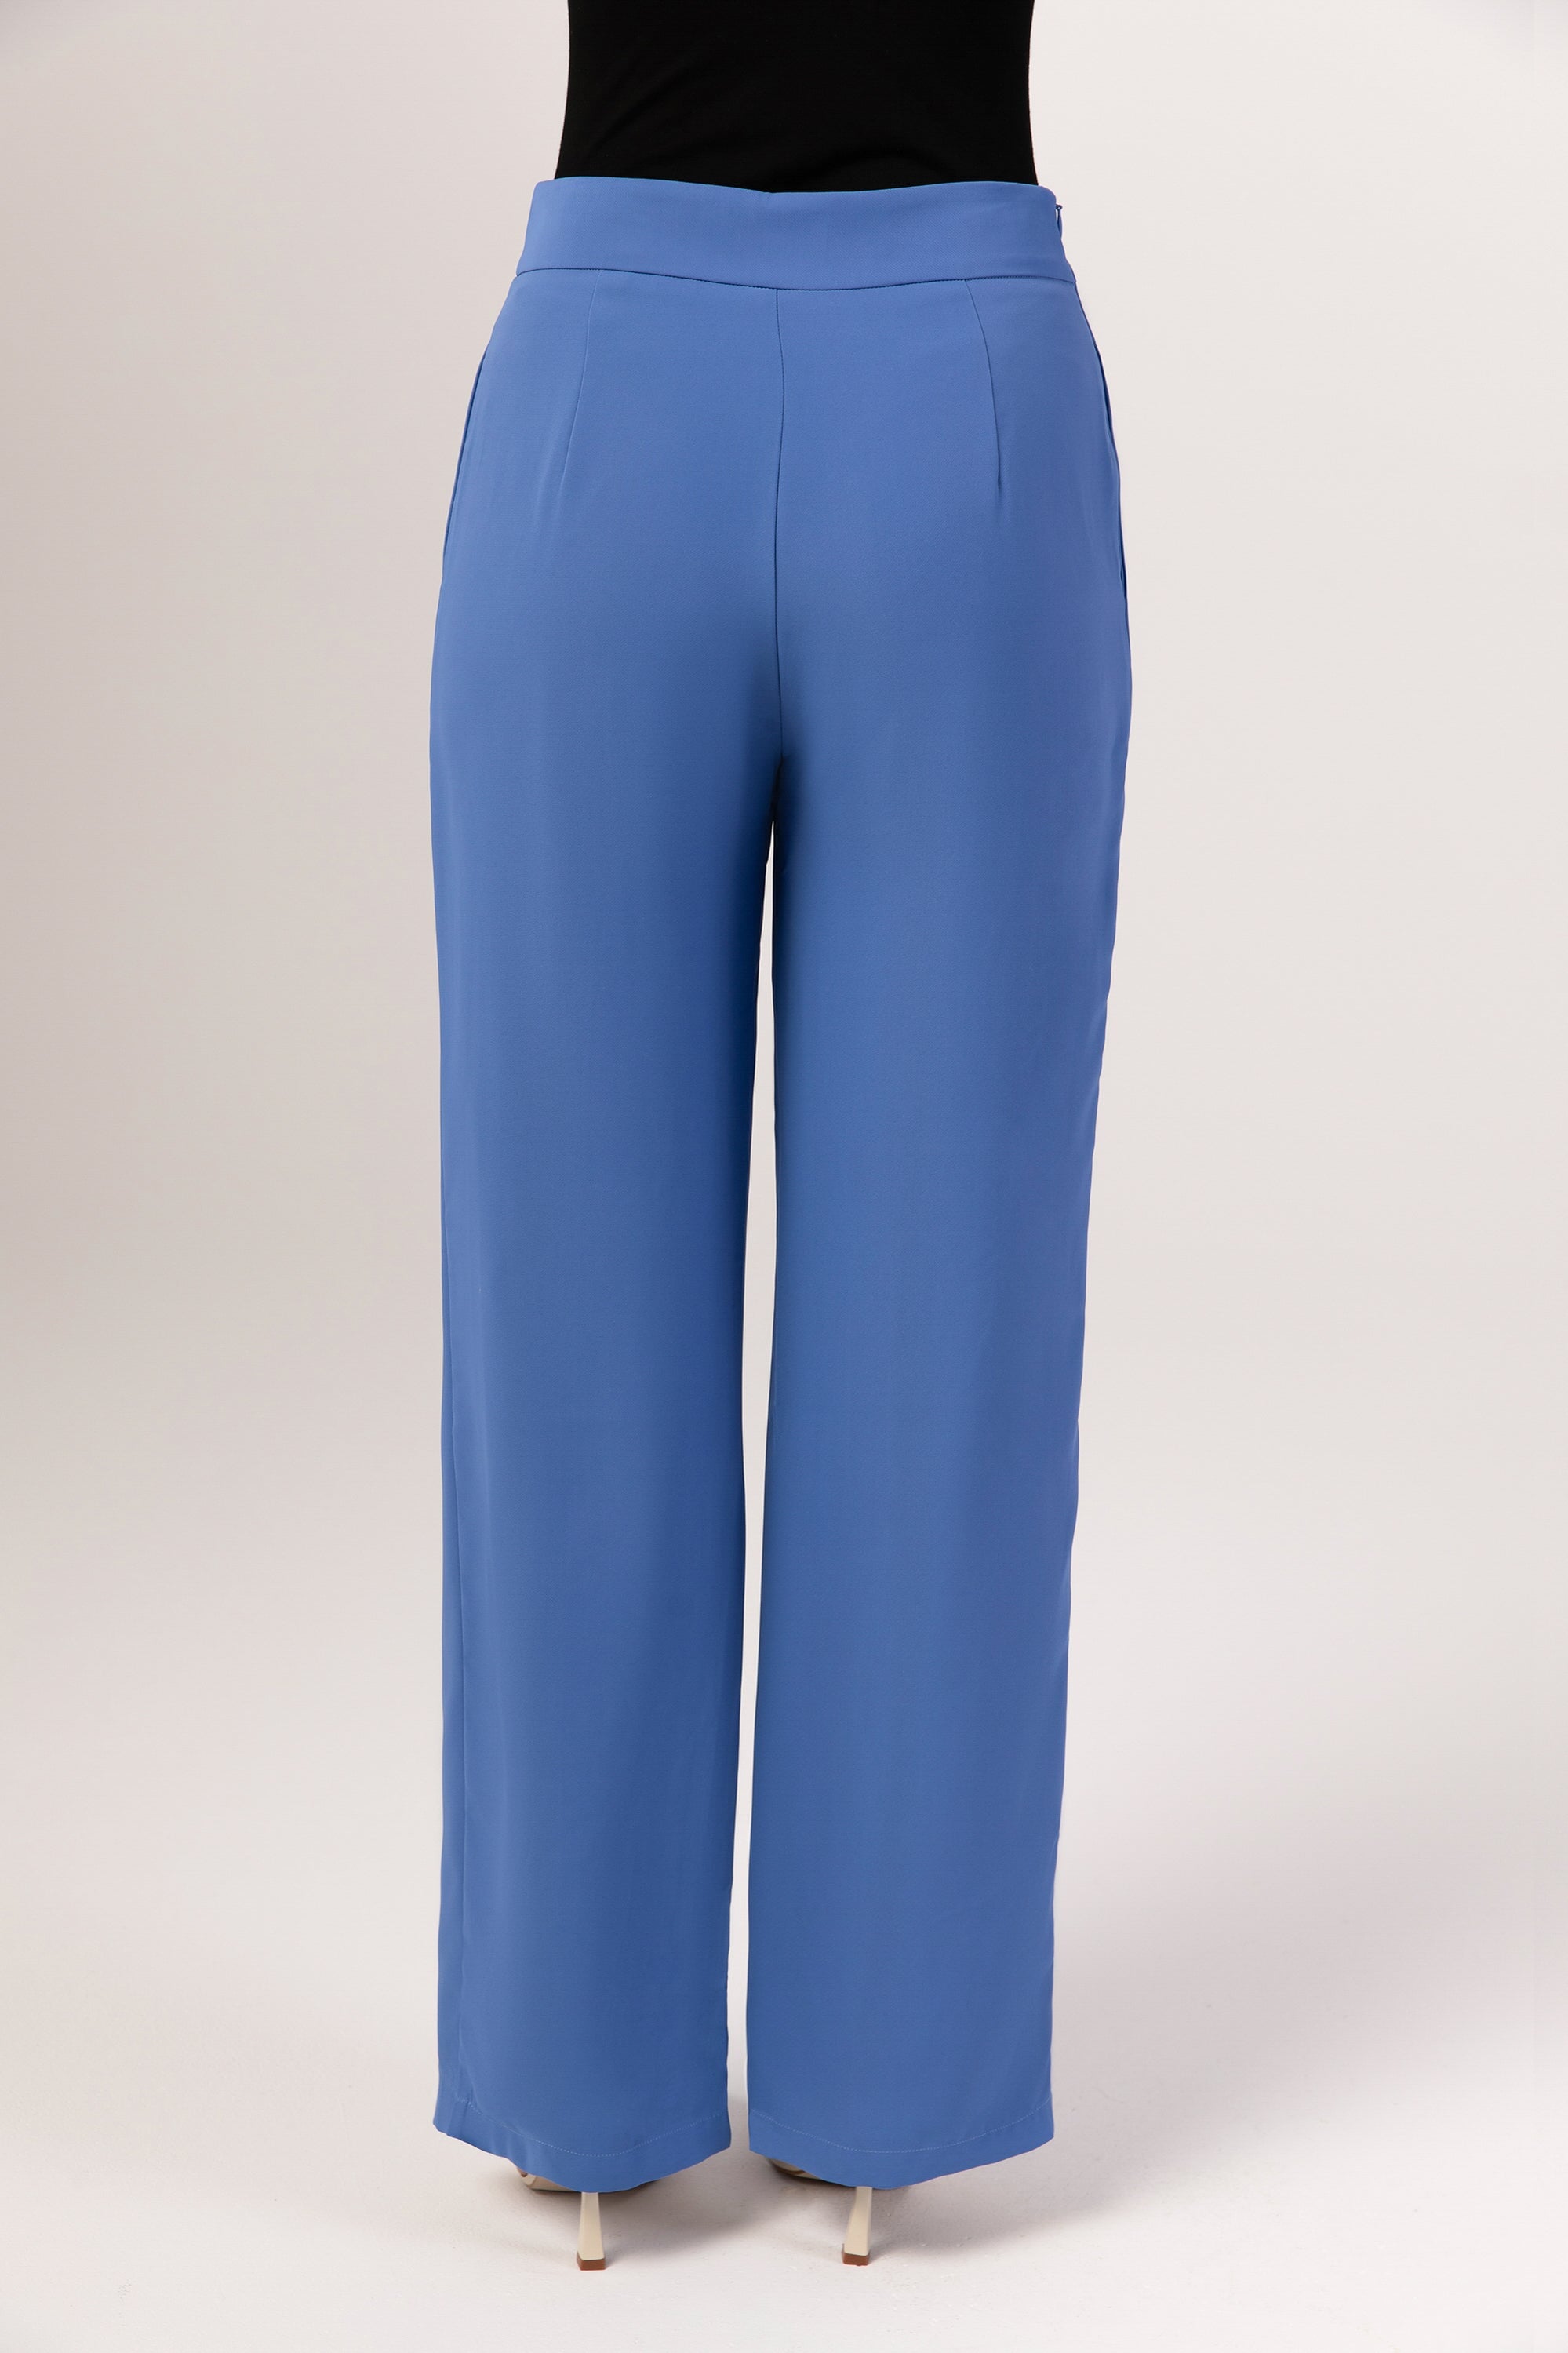 Emanuel Ungaro Silk Cobalt Trousers 32